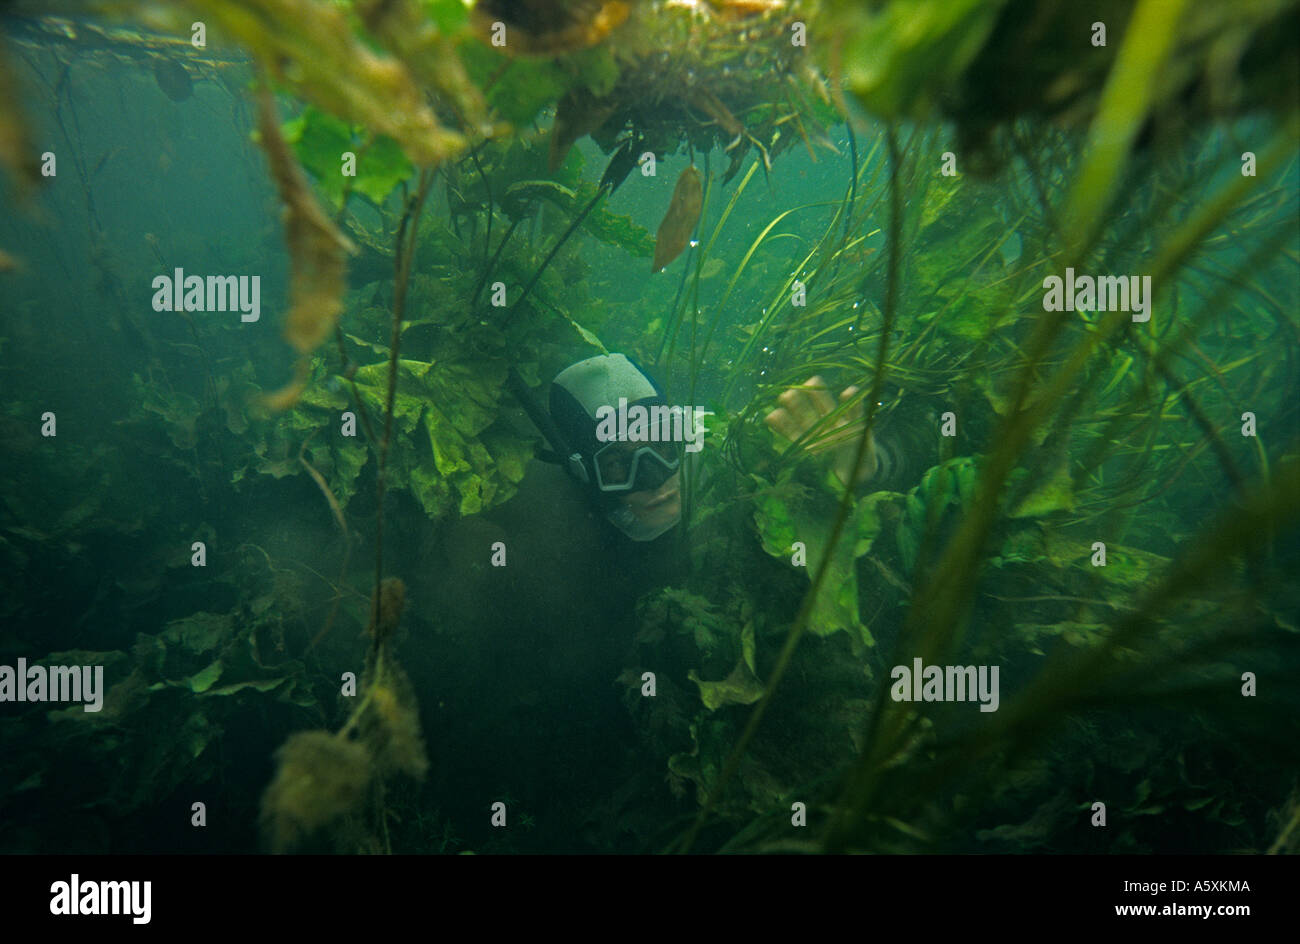 Un movimento snorkeller circa le piante acquatiche (Francia). Plongeur Sous-marin (apnéiste) évoluant au milieu de Plantes aquatiques. Foto Stock